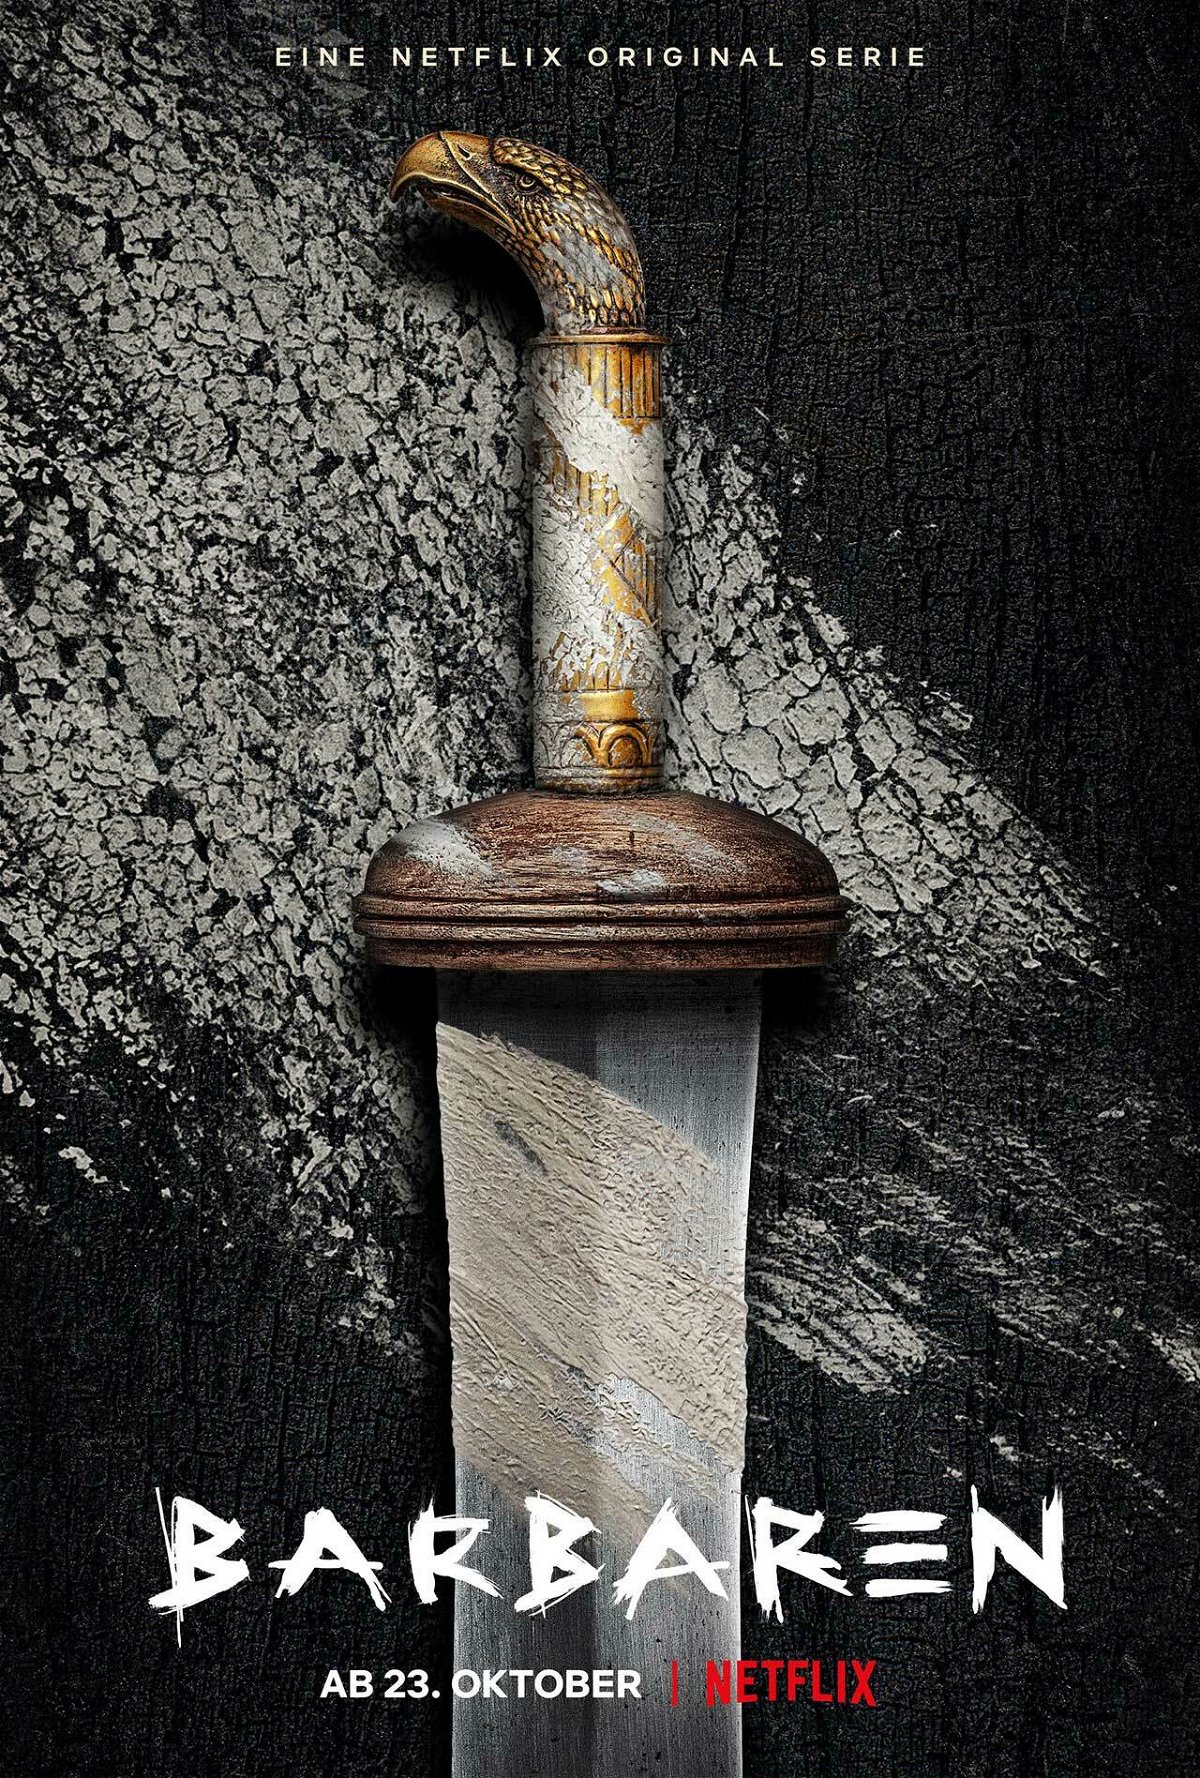 Una spada è pogiata su quello che sembra essere un tavolo di legno